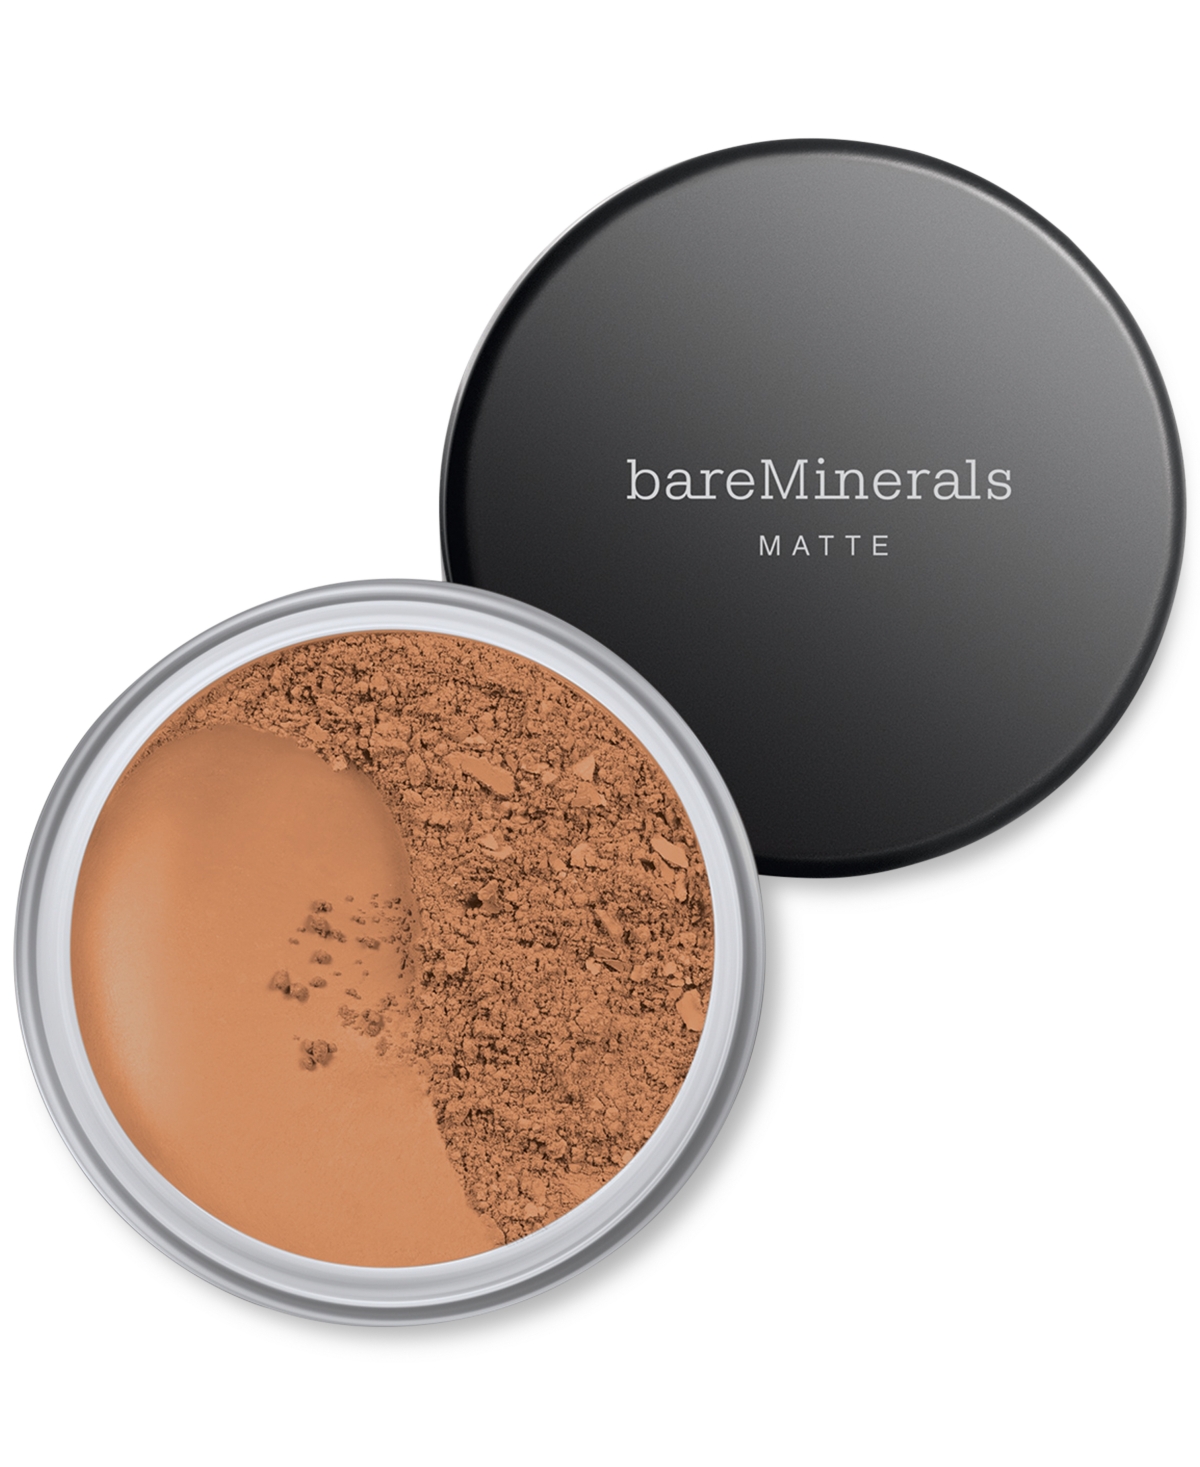 bareMinerals Matte Loose Powder Foundation Spf 15 - Medium Dark - for dark skin with cool t